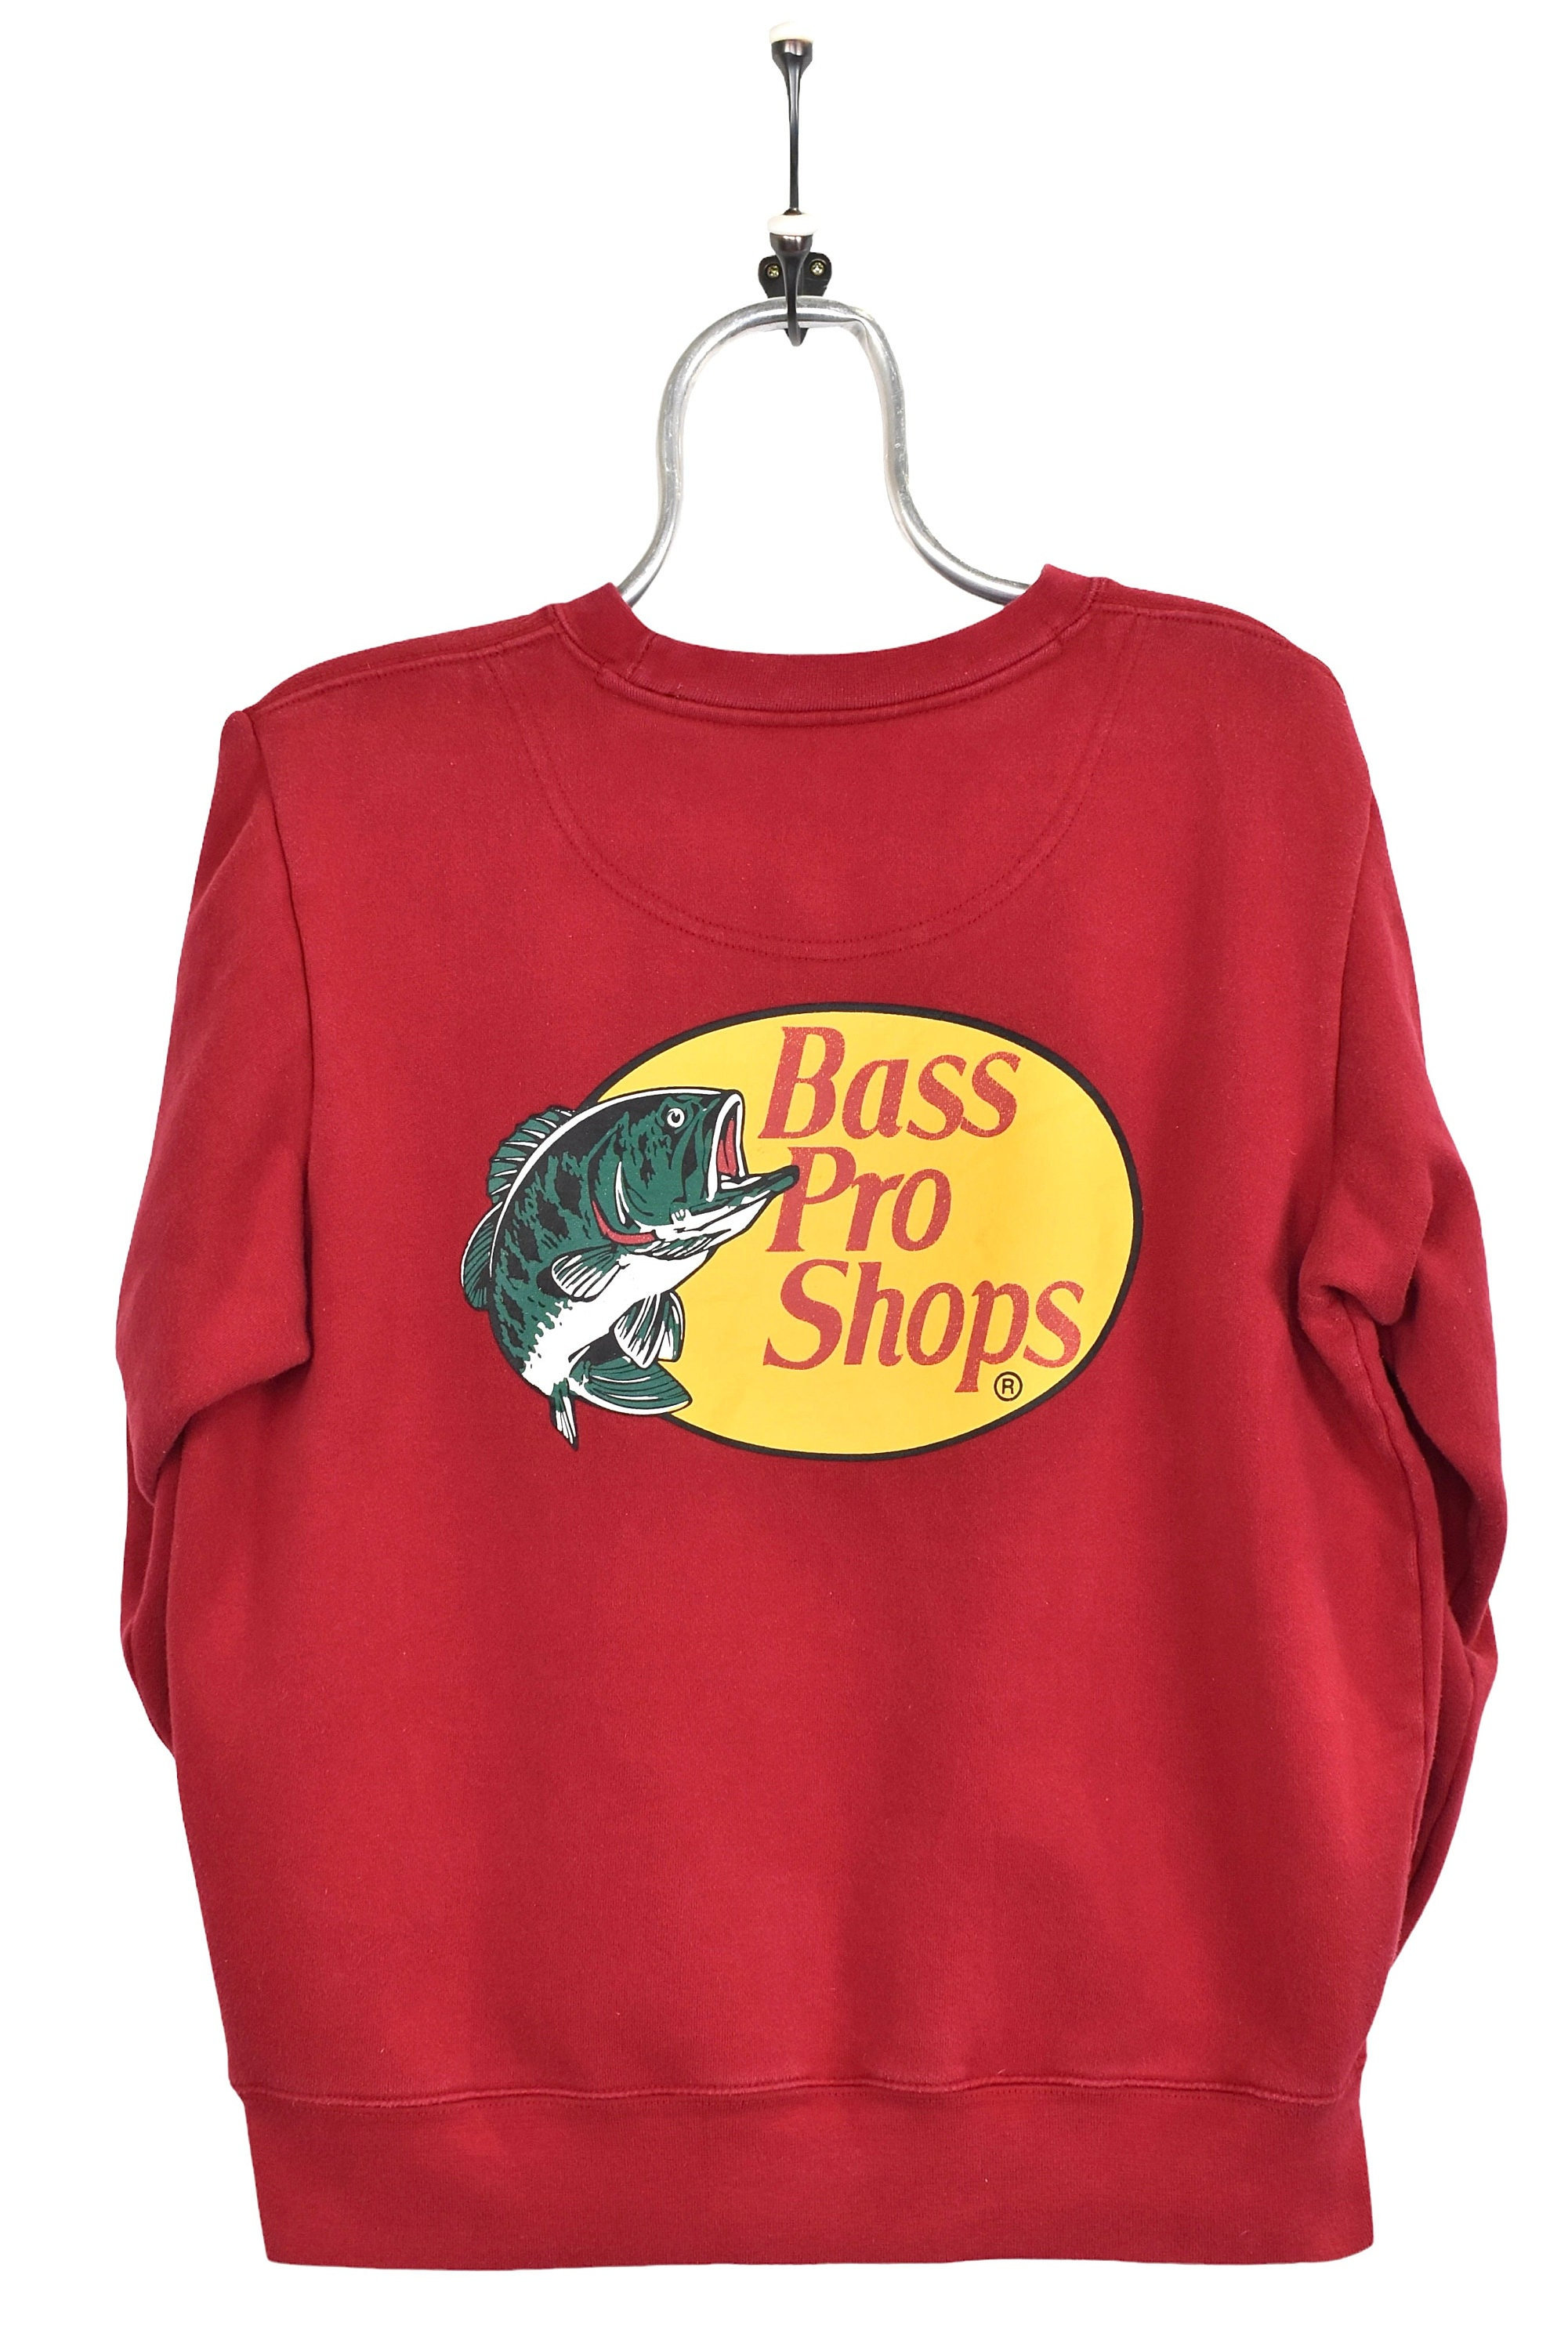 Vintage Bass Pro Shops Sweatshirt, 90s Streetwear Long Sleeve Red